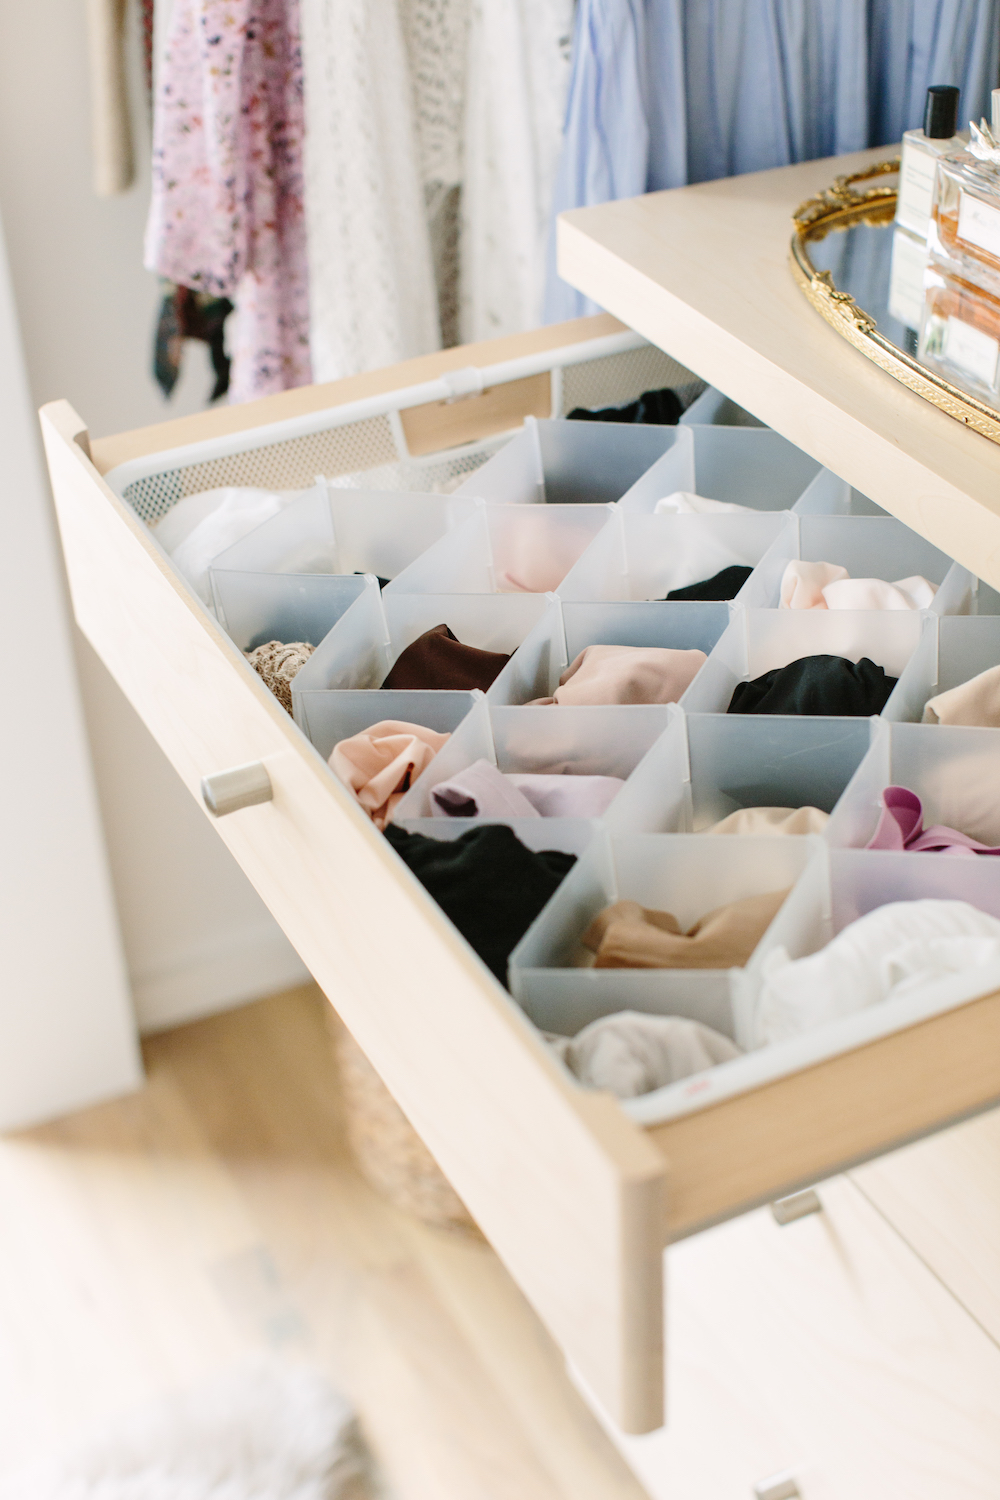 How to organize your drawers underwear + Bras #organizingtiktok